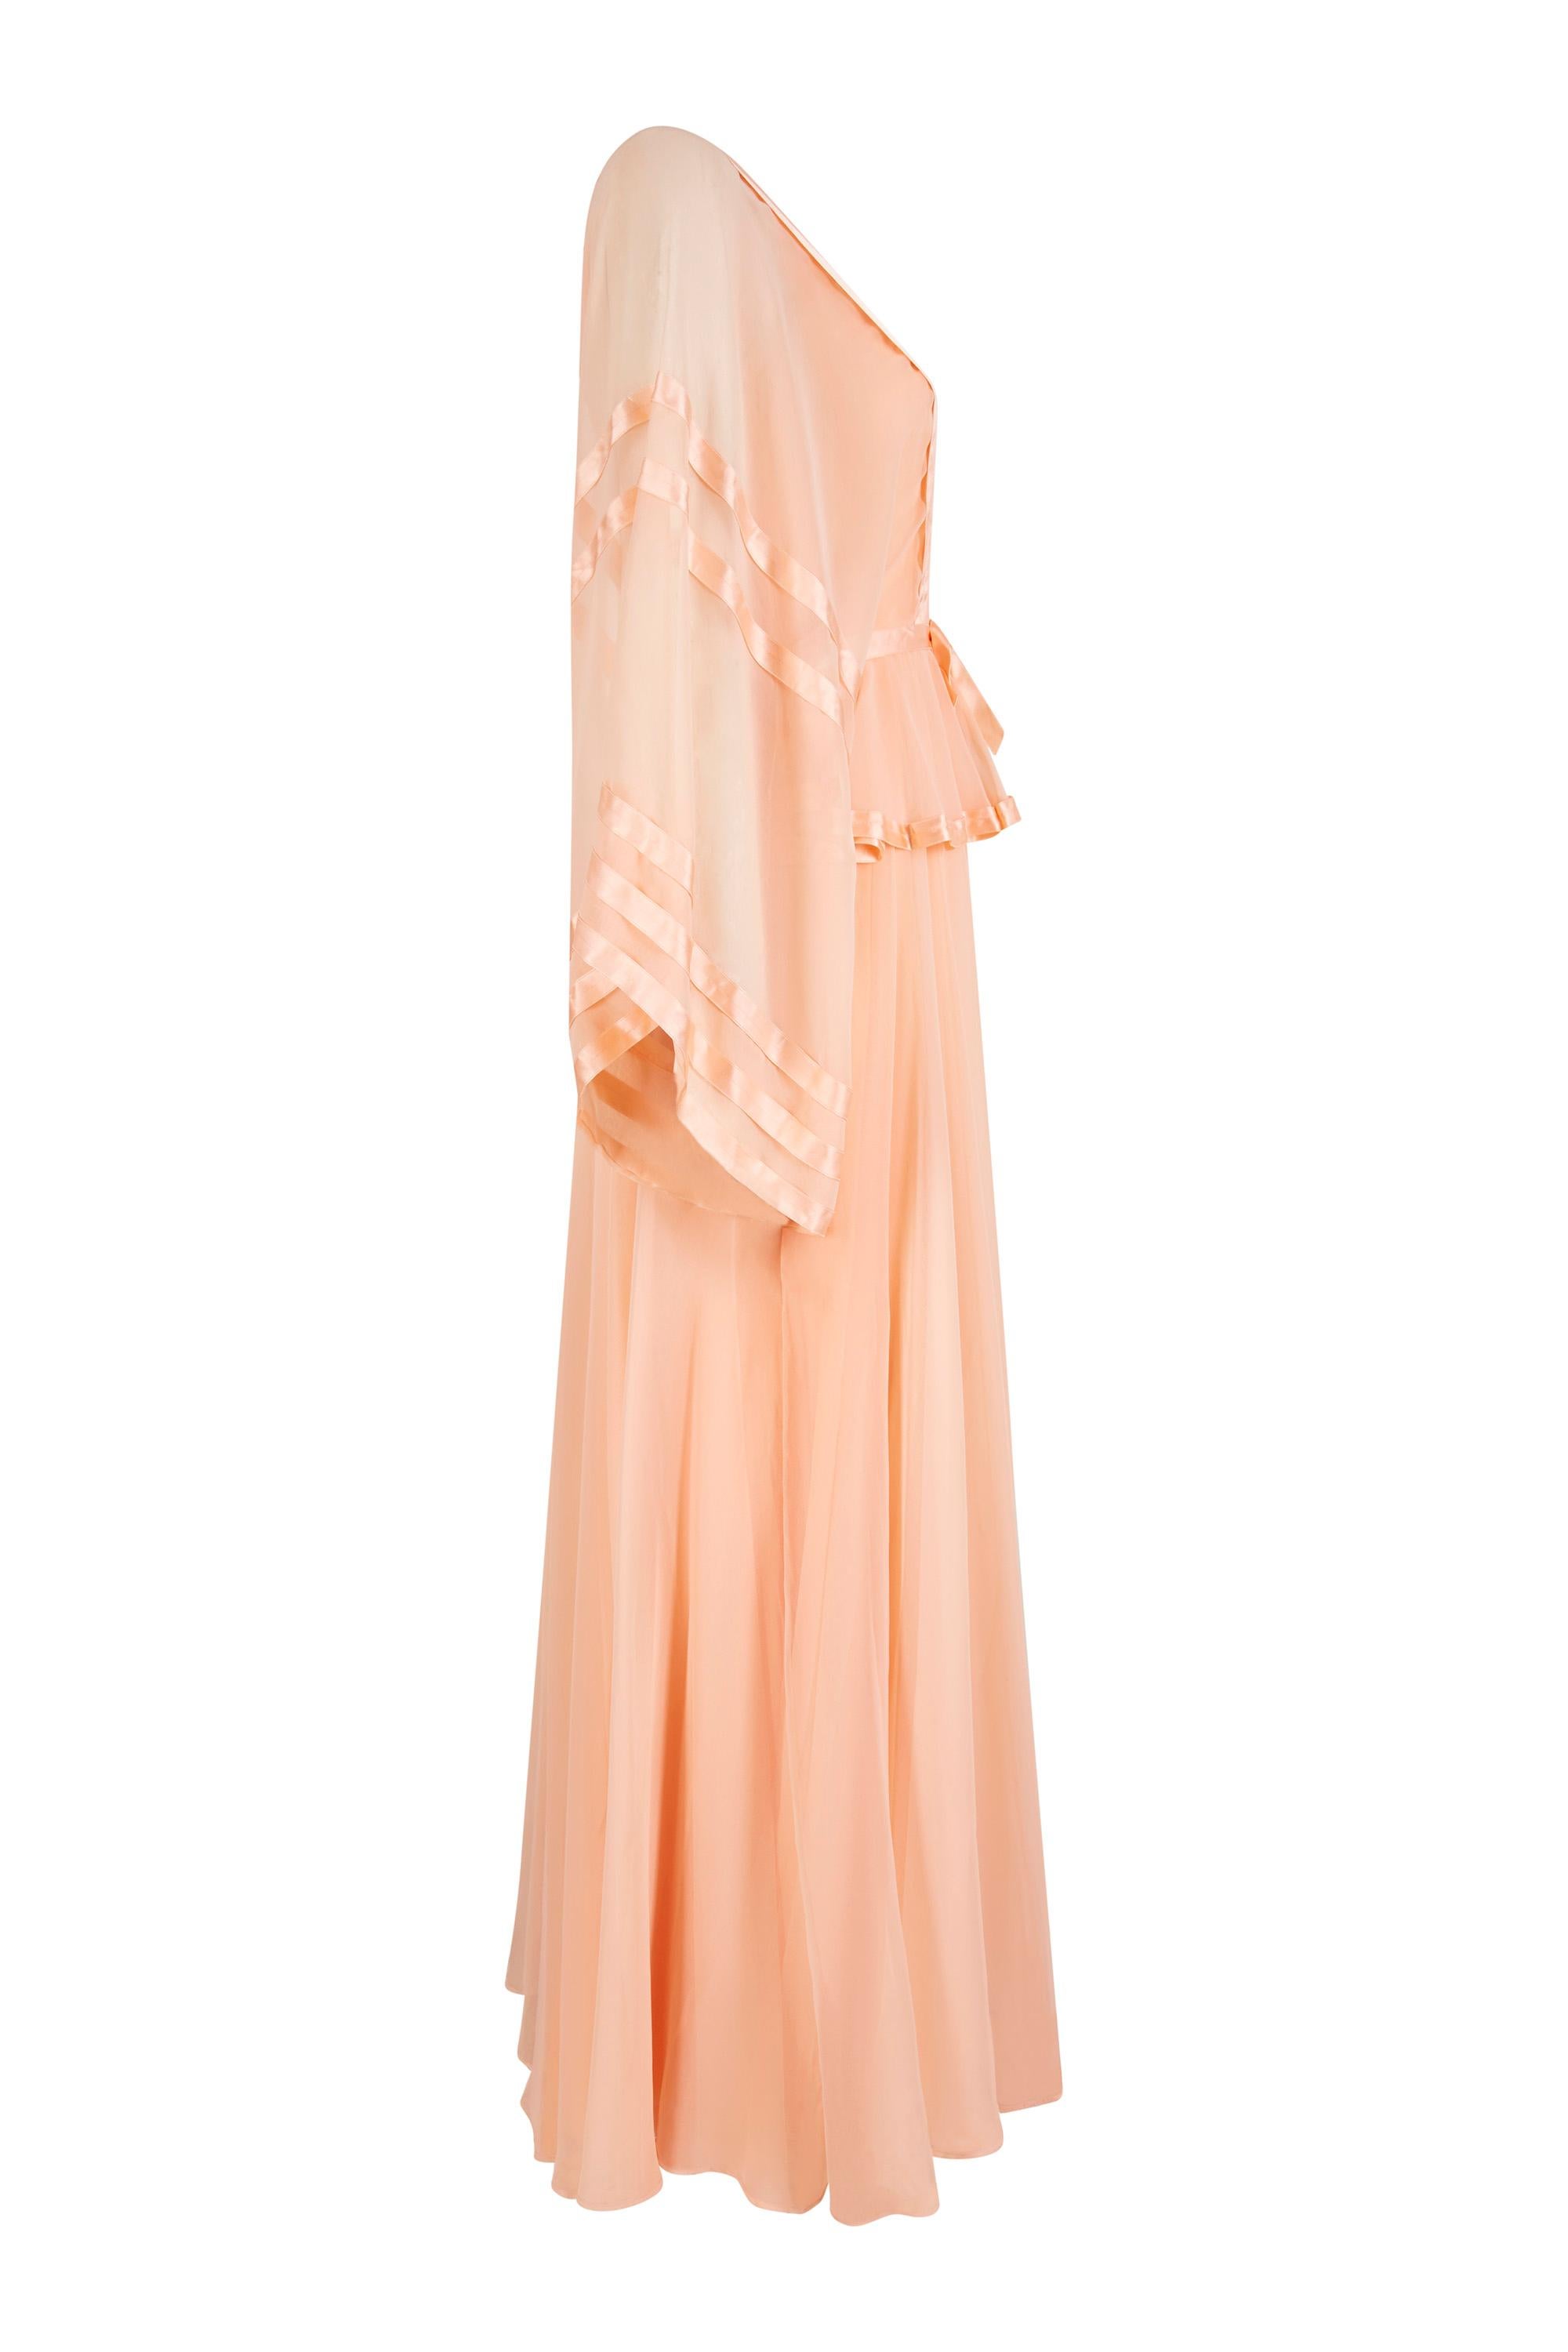 Cette captivante robe en mousseline de soie pêche pâle des années 1970, bordée de rubans, est signée du label britannique Jean Varon et constitue un bel exemple du penchant du créateur pour les lignes féminines plus douces, synonymes de son travail